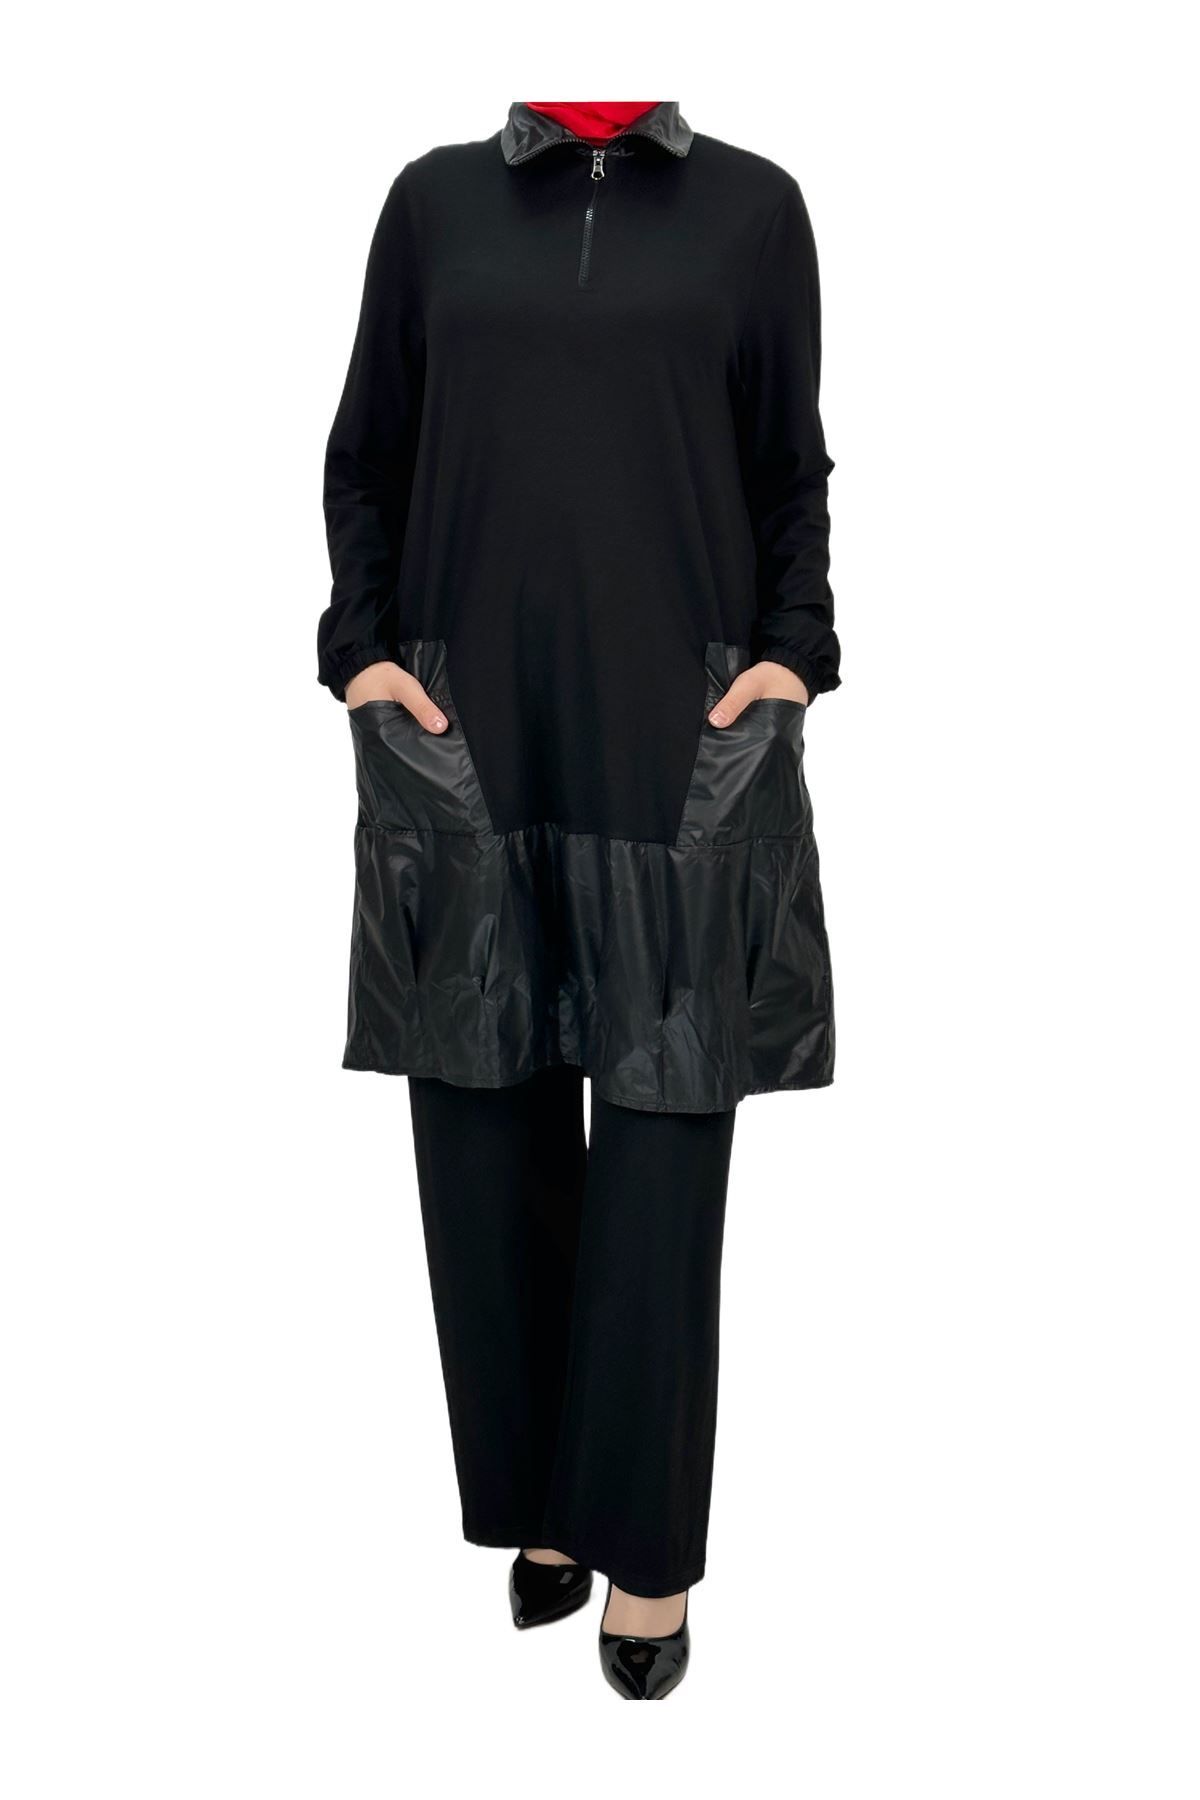 ottoman wear OTW4451 Paraşüt Kumaş Pantolonlu Takım Siyah